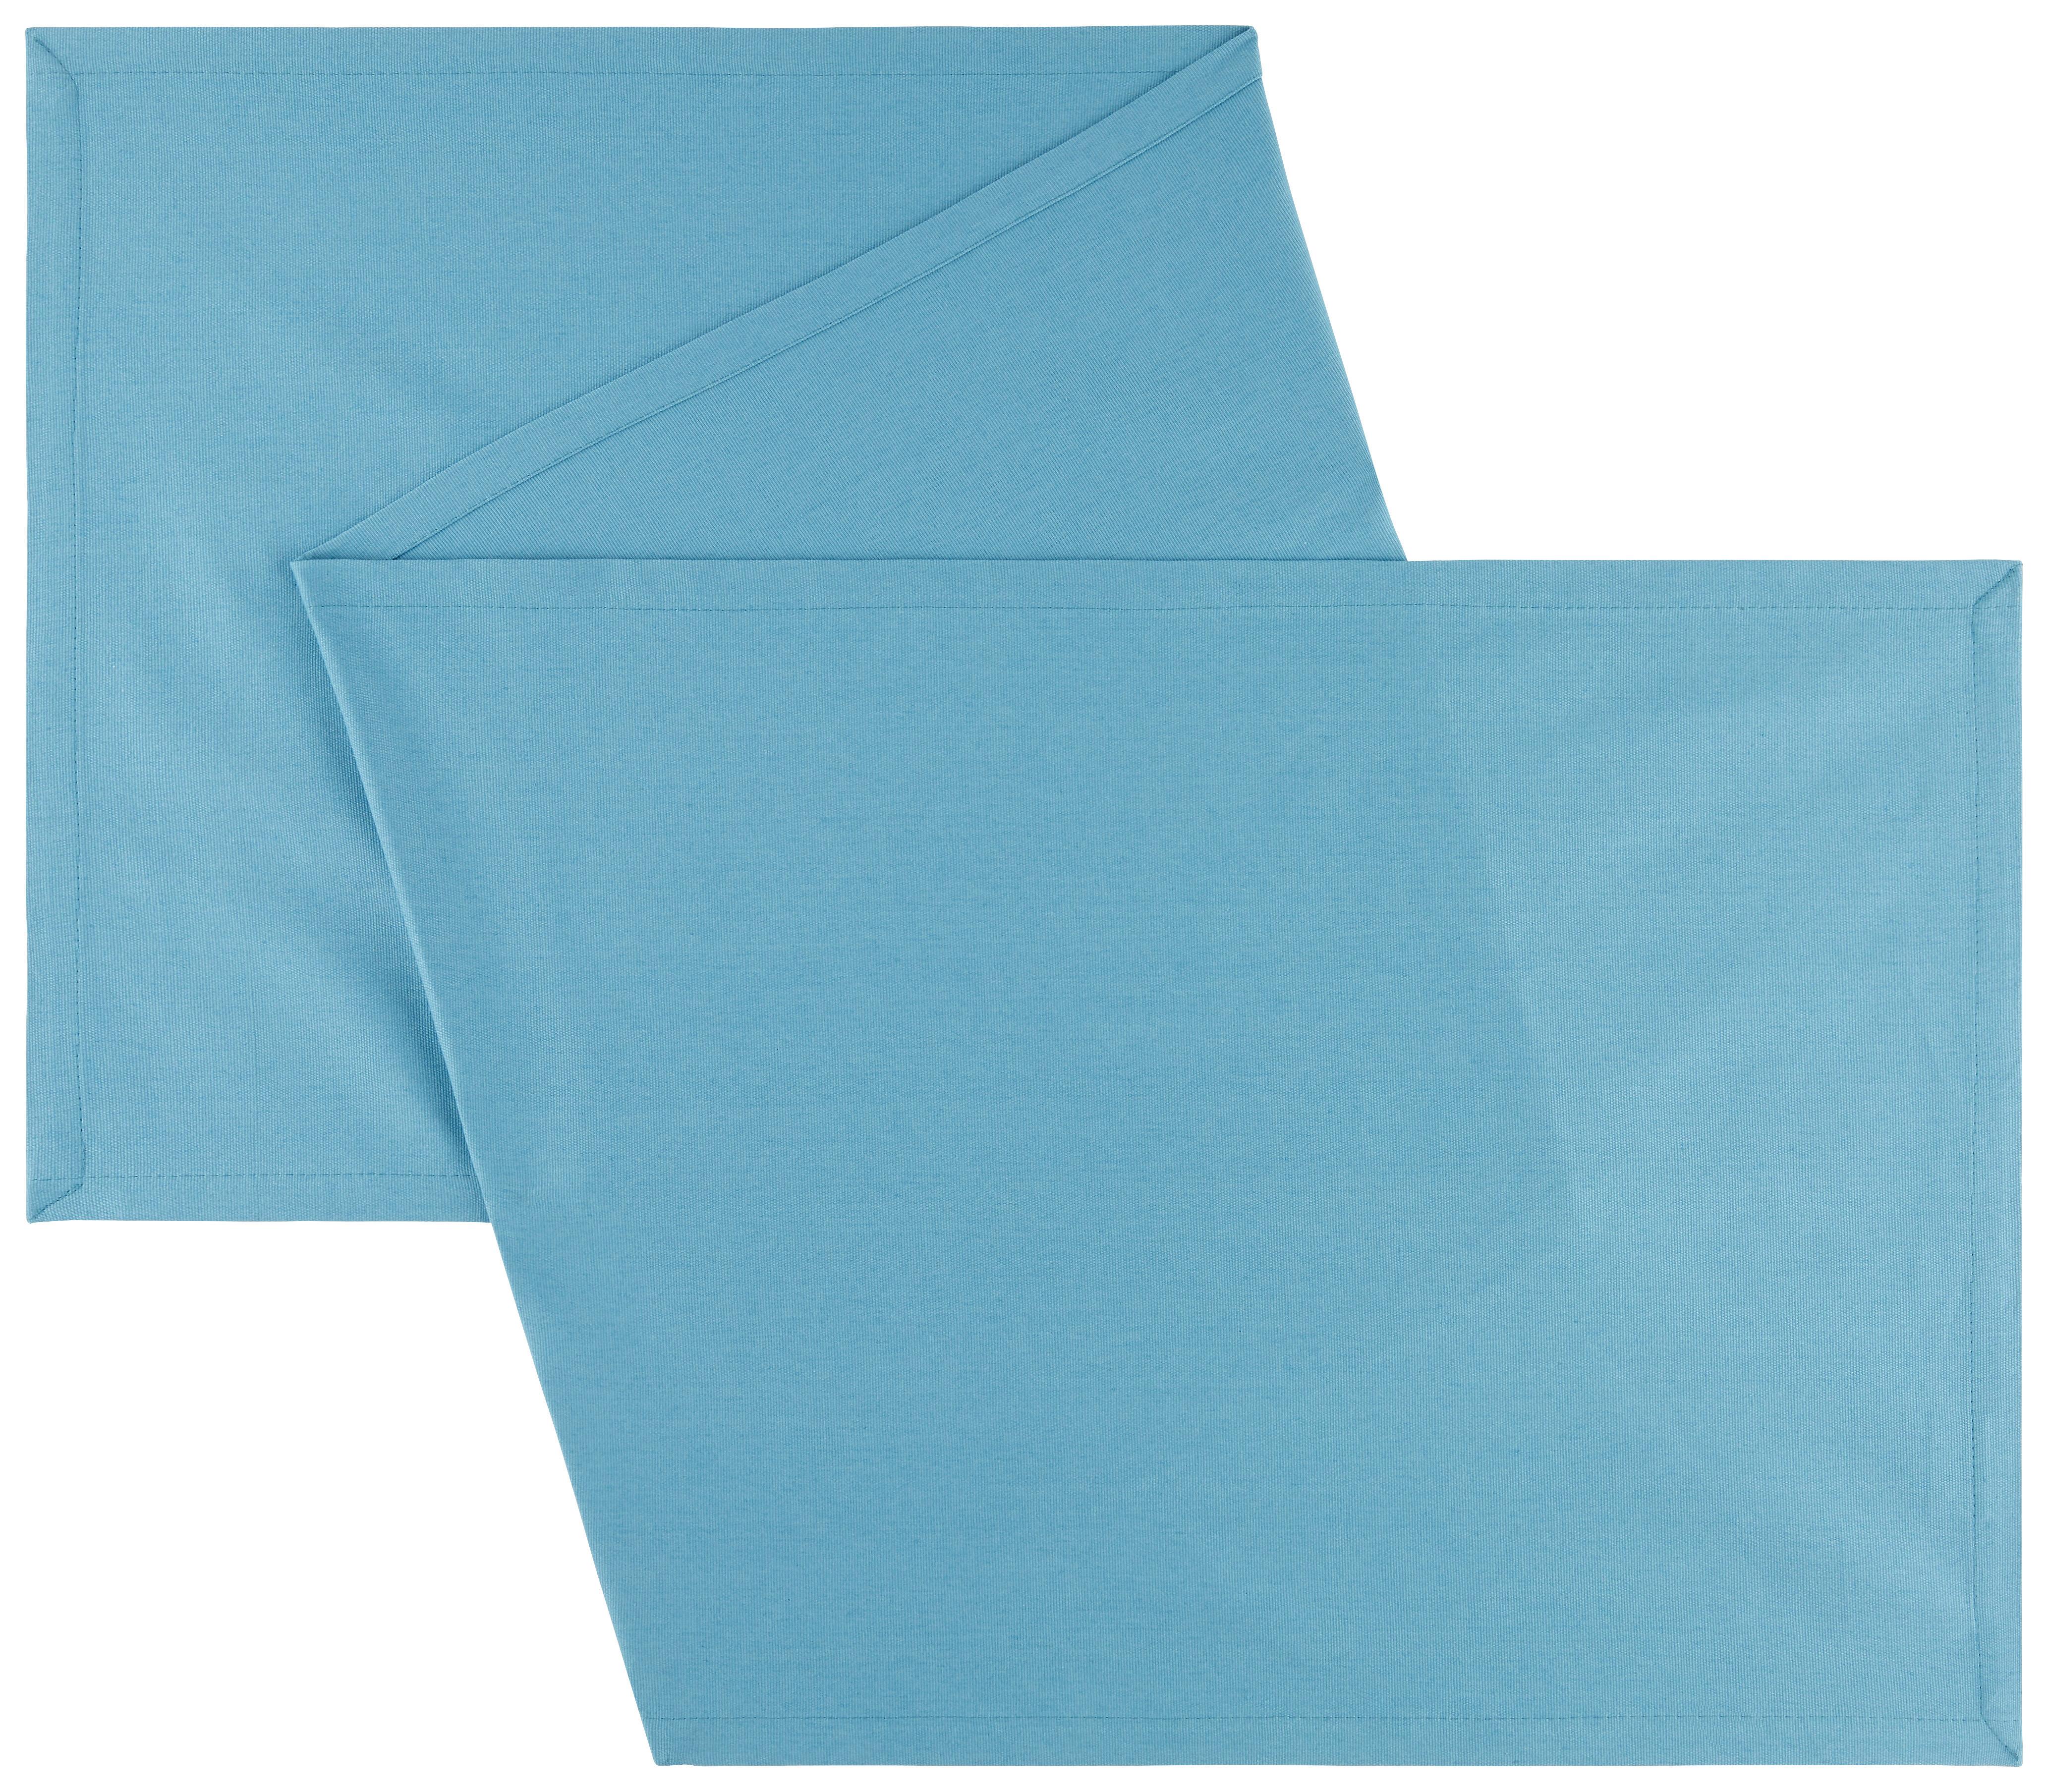 Traversă de masă Steffi - albastru, textil (45/150cm) - Modern Living